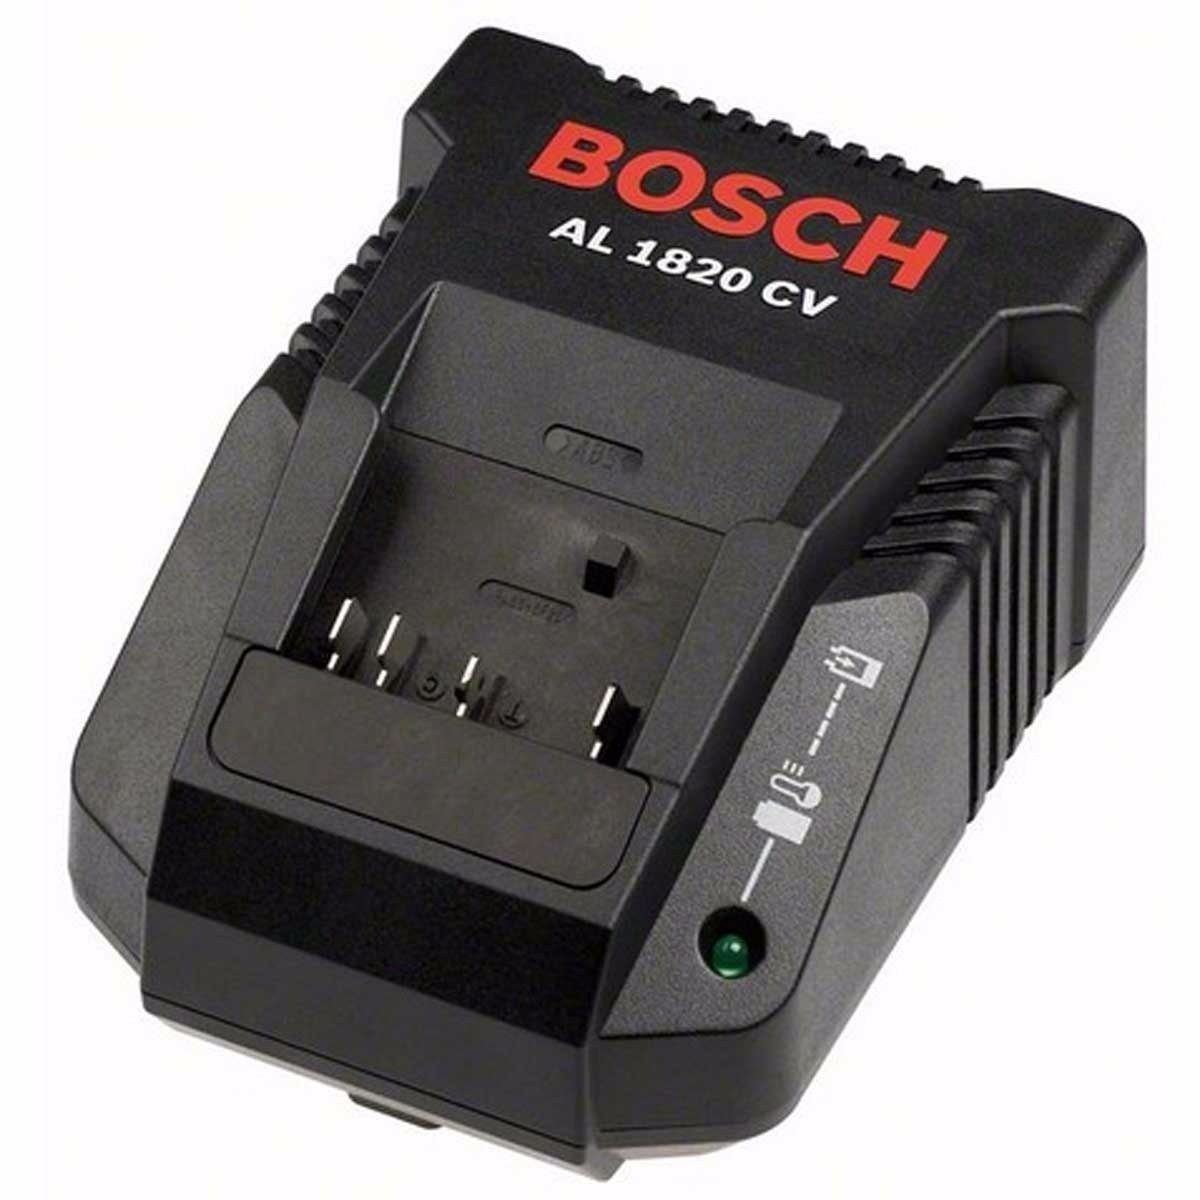 Cargador de Baterías Li-Ion Bosch AL 1820 CV - 14.4 / 18 V